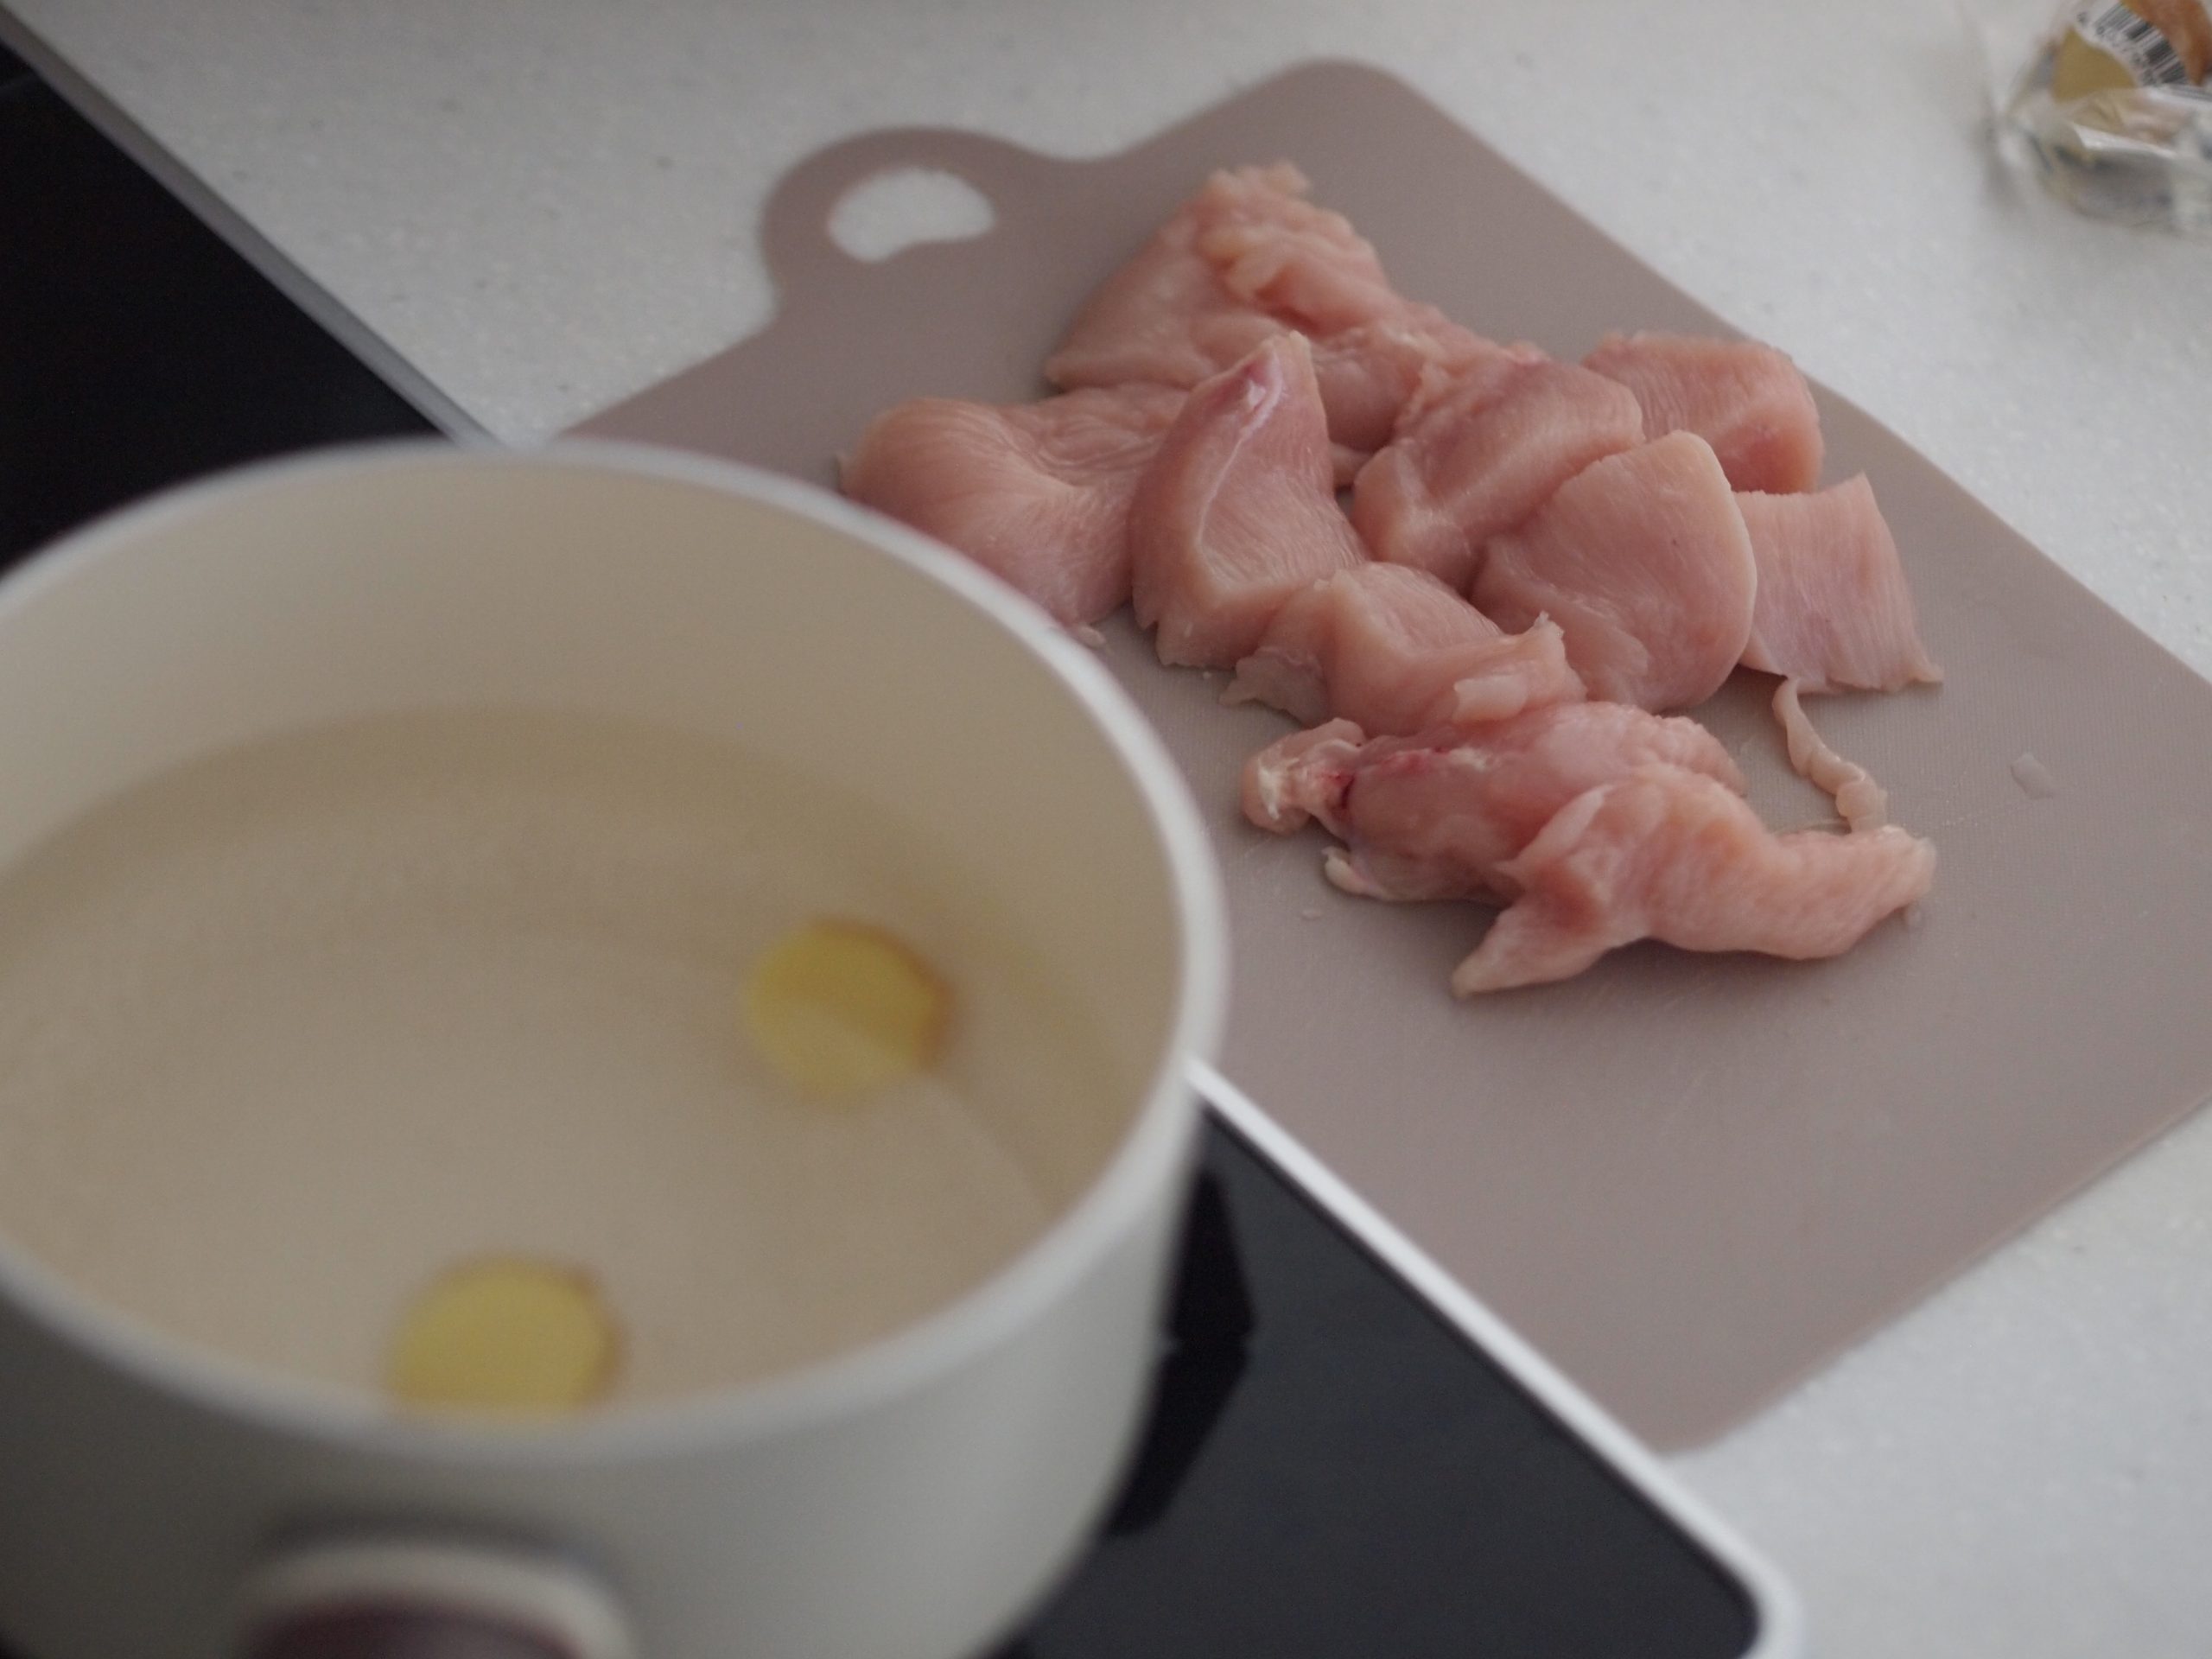 鶏むね肉の皮をはぎぶつ切りにして、Aを加えて沸騰させたお湯に入れたら蓋をして火を止める。20分余熱で火を通す。